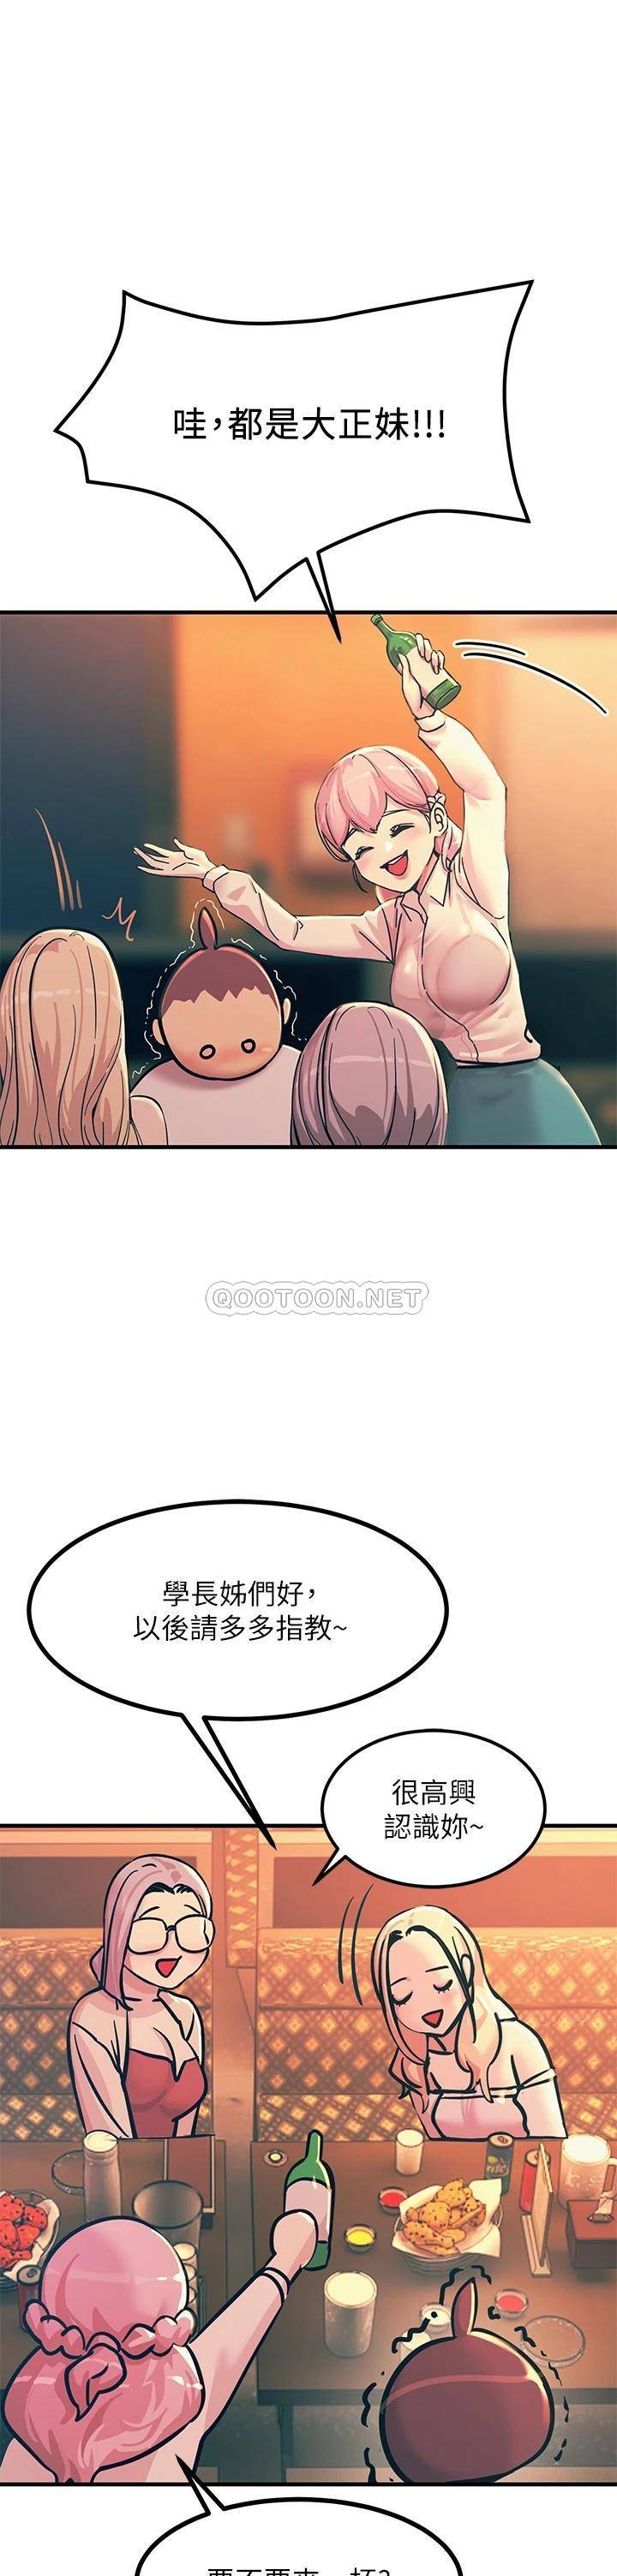 韩国污漫画 觸電大師 第3话 不停流泄的淫水 46